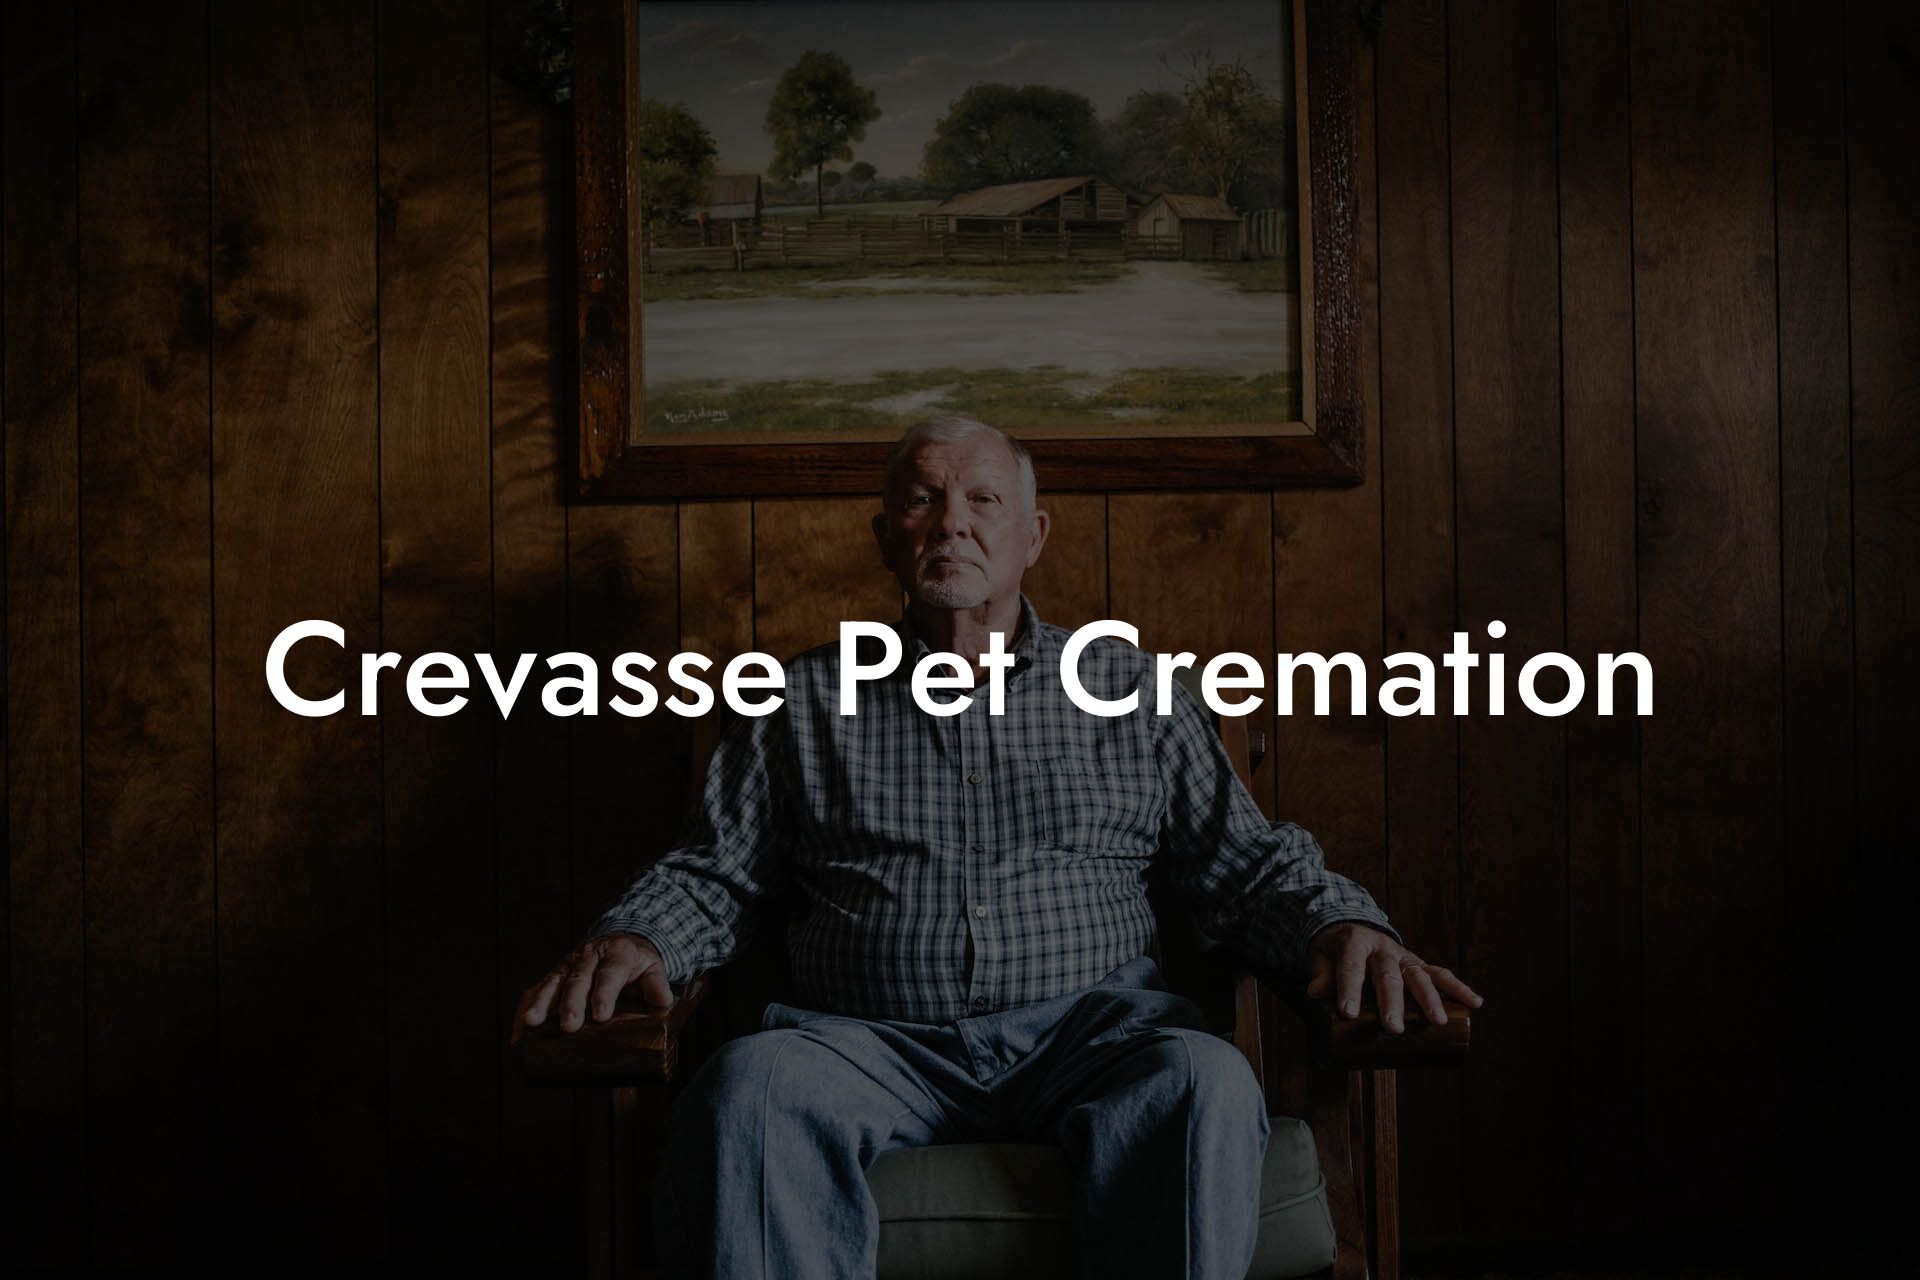 Crevasse Pet Cremation